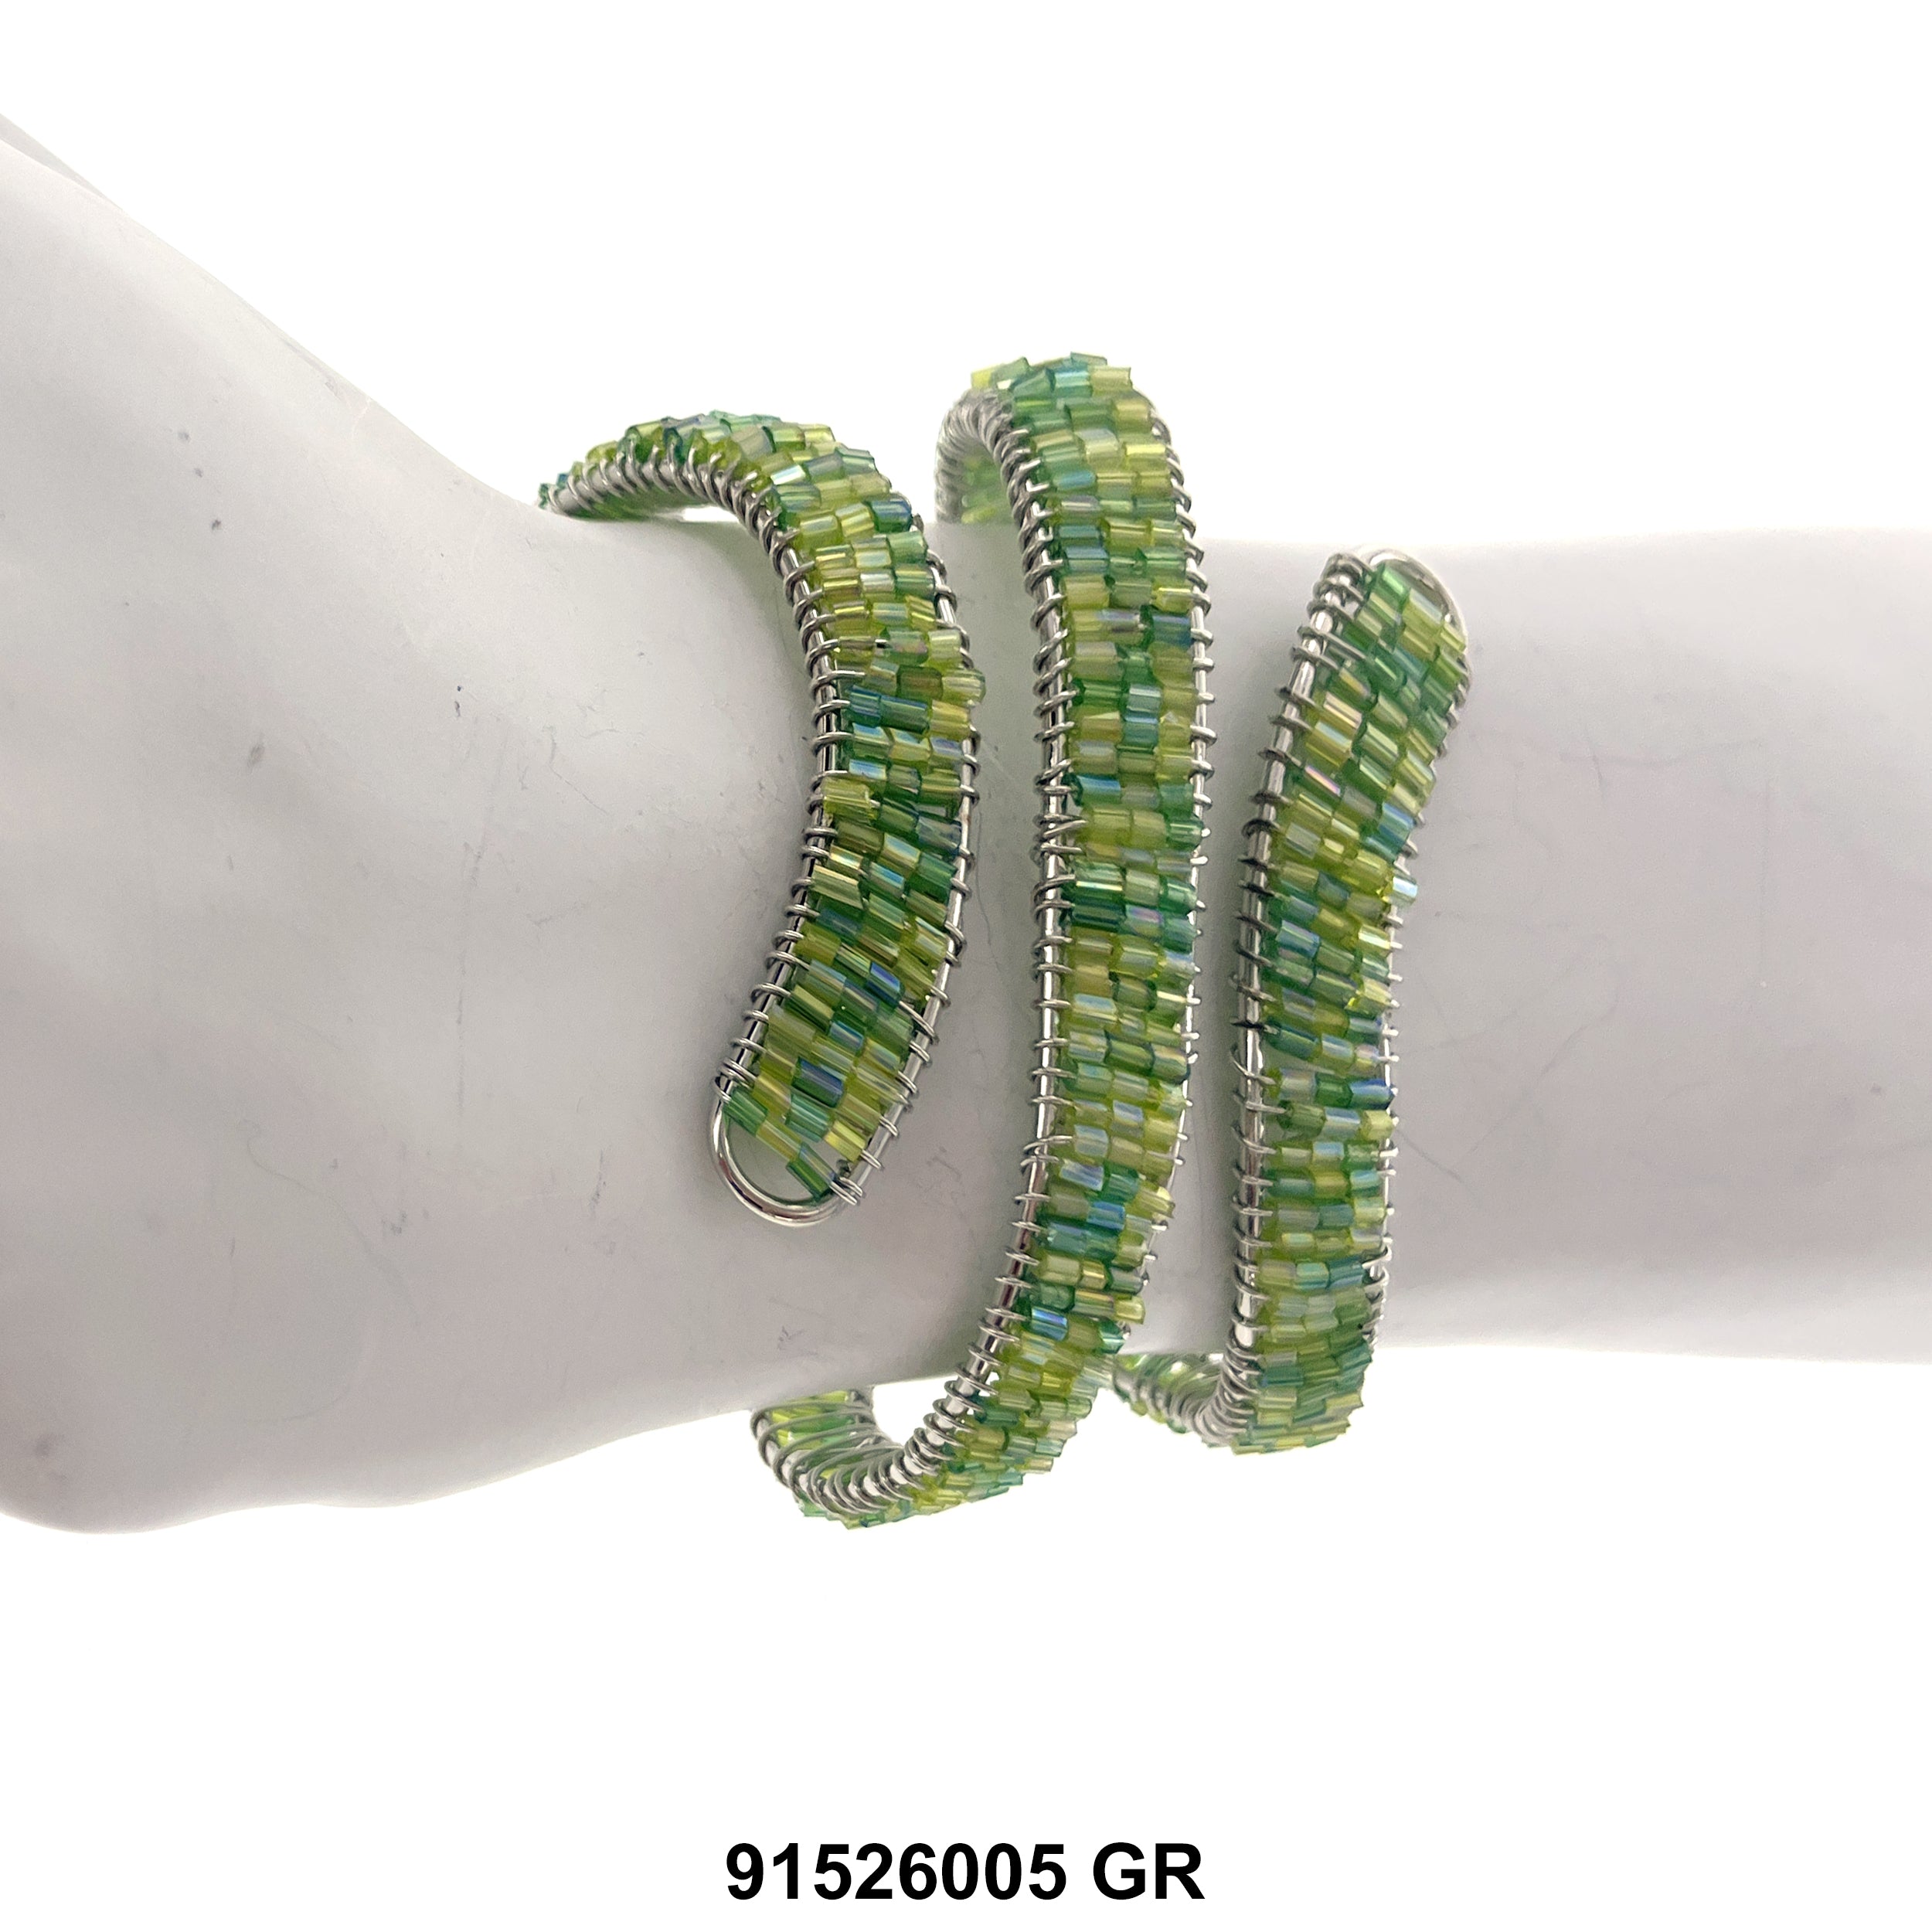 Cuff Bangle Bracelet 91526005 GR